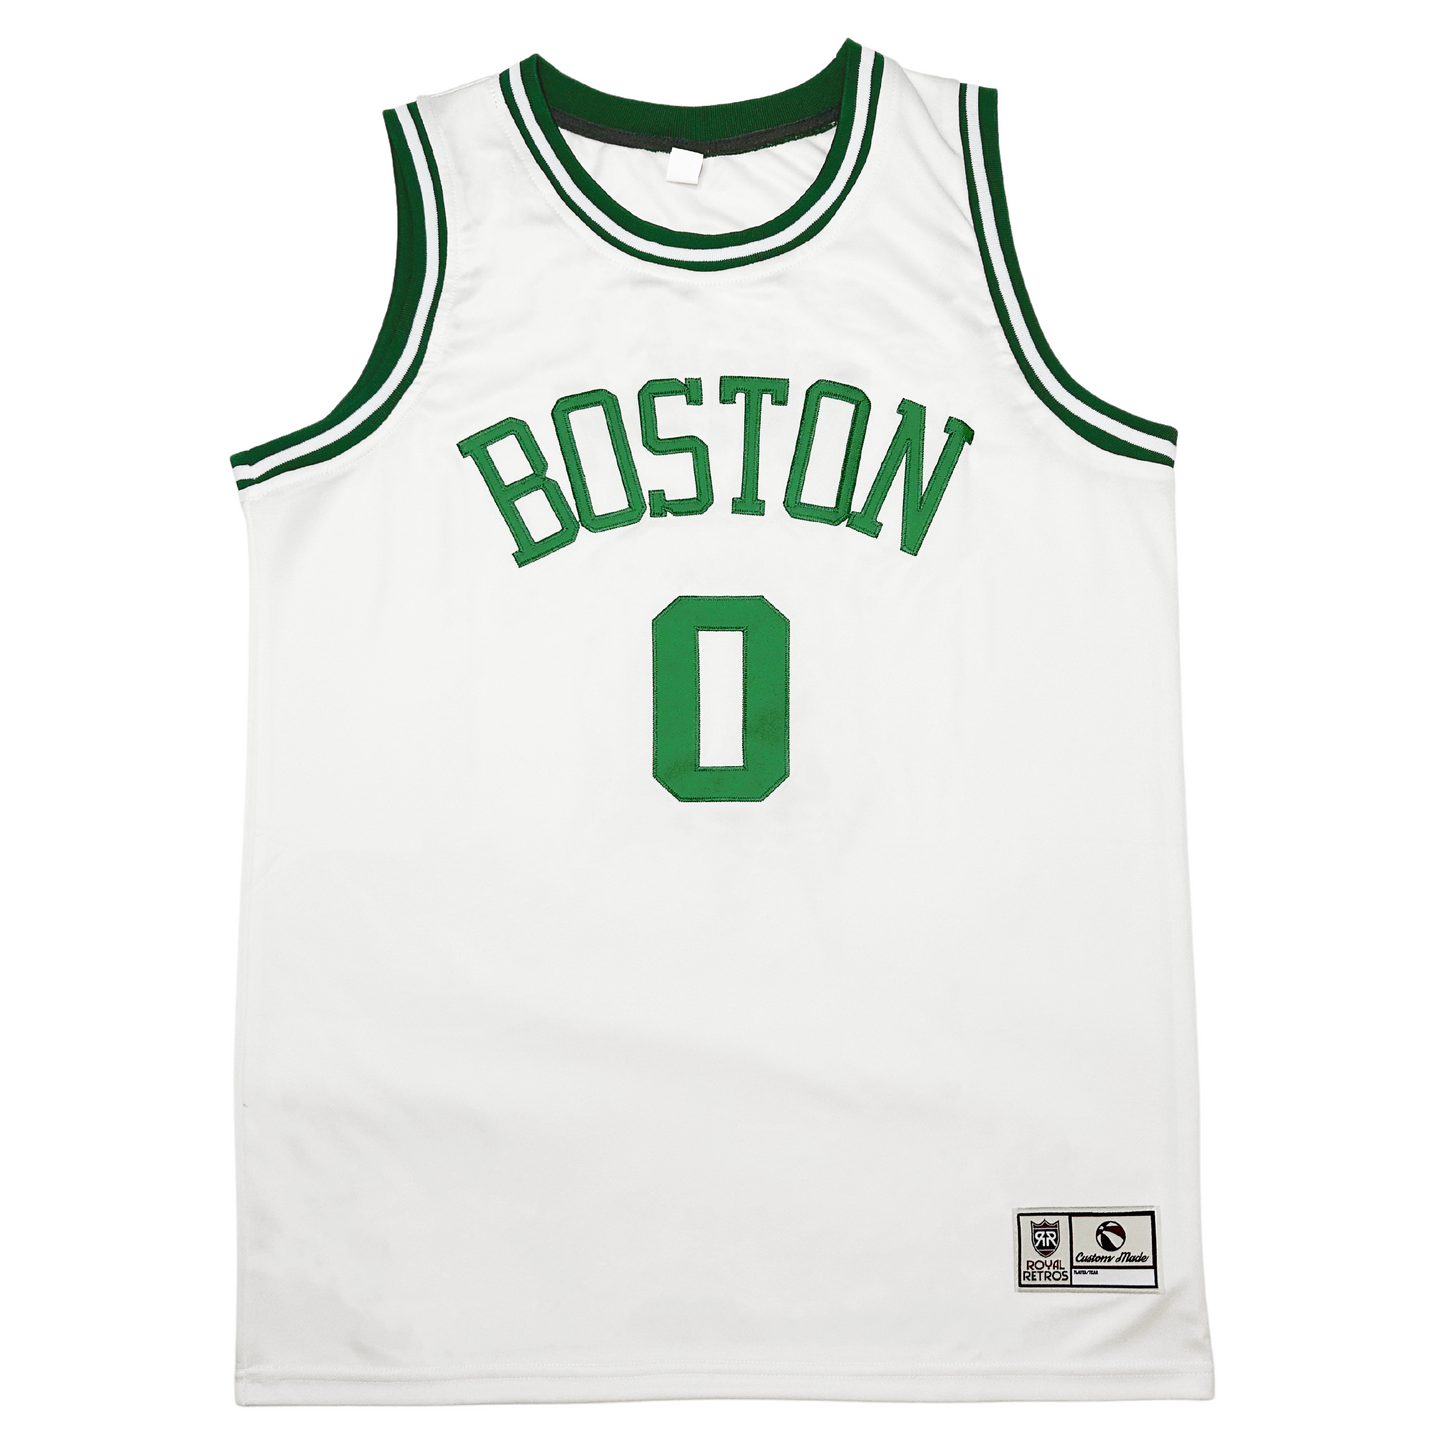 Boston Basketball Jersey